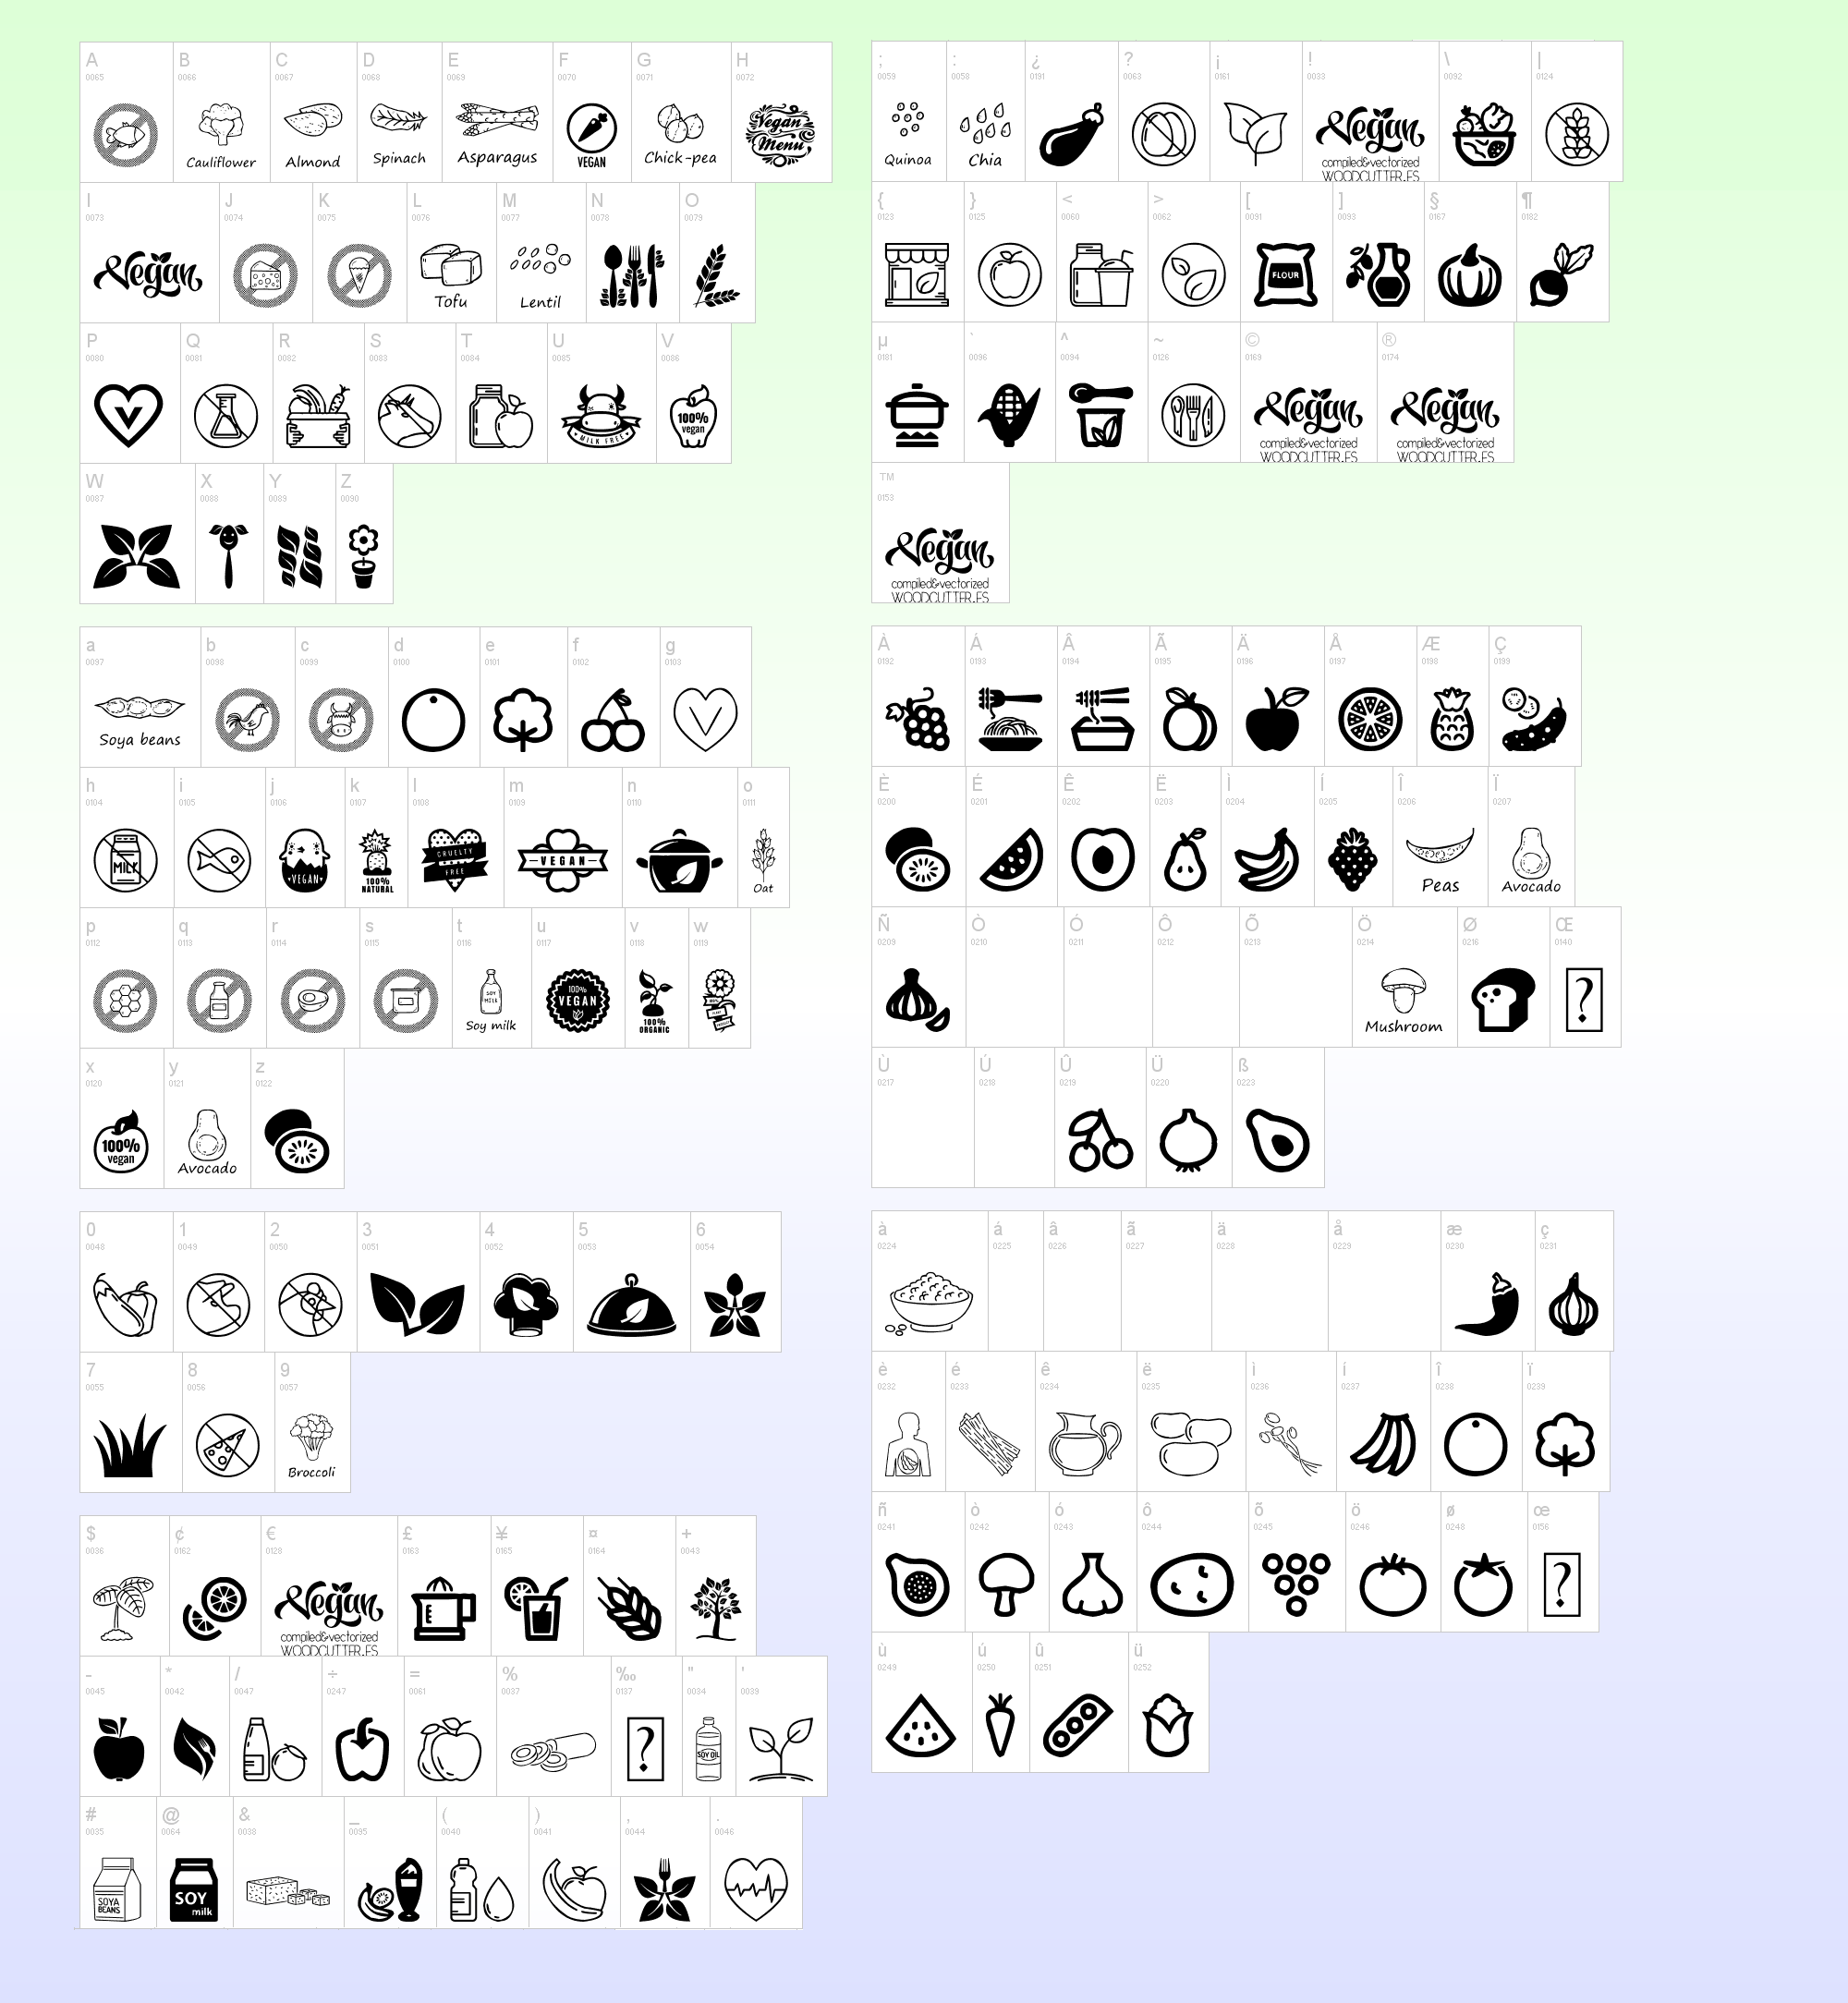 Black white emojis copy paste and White Flower